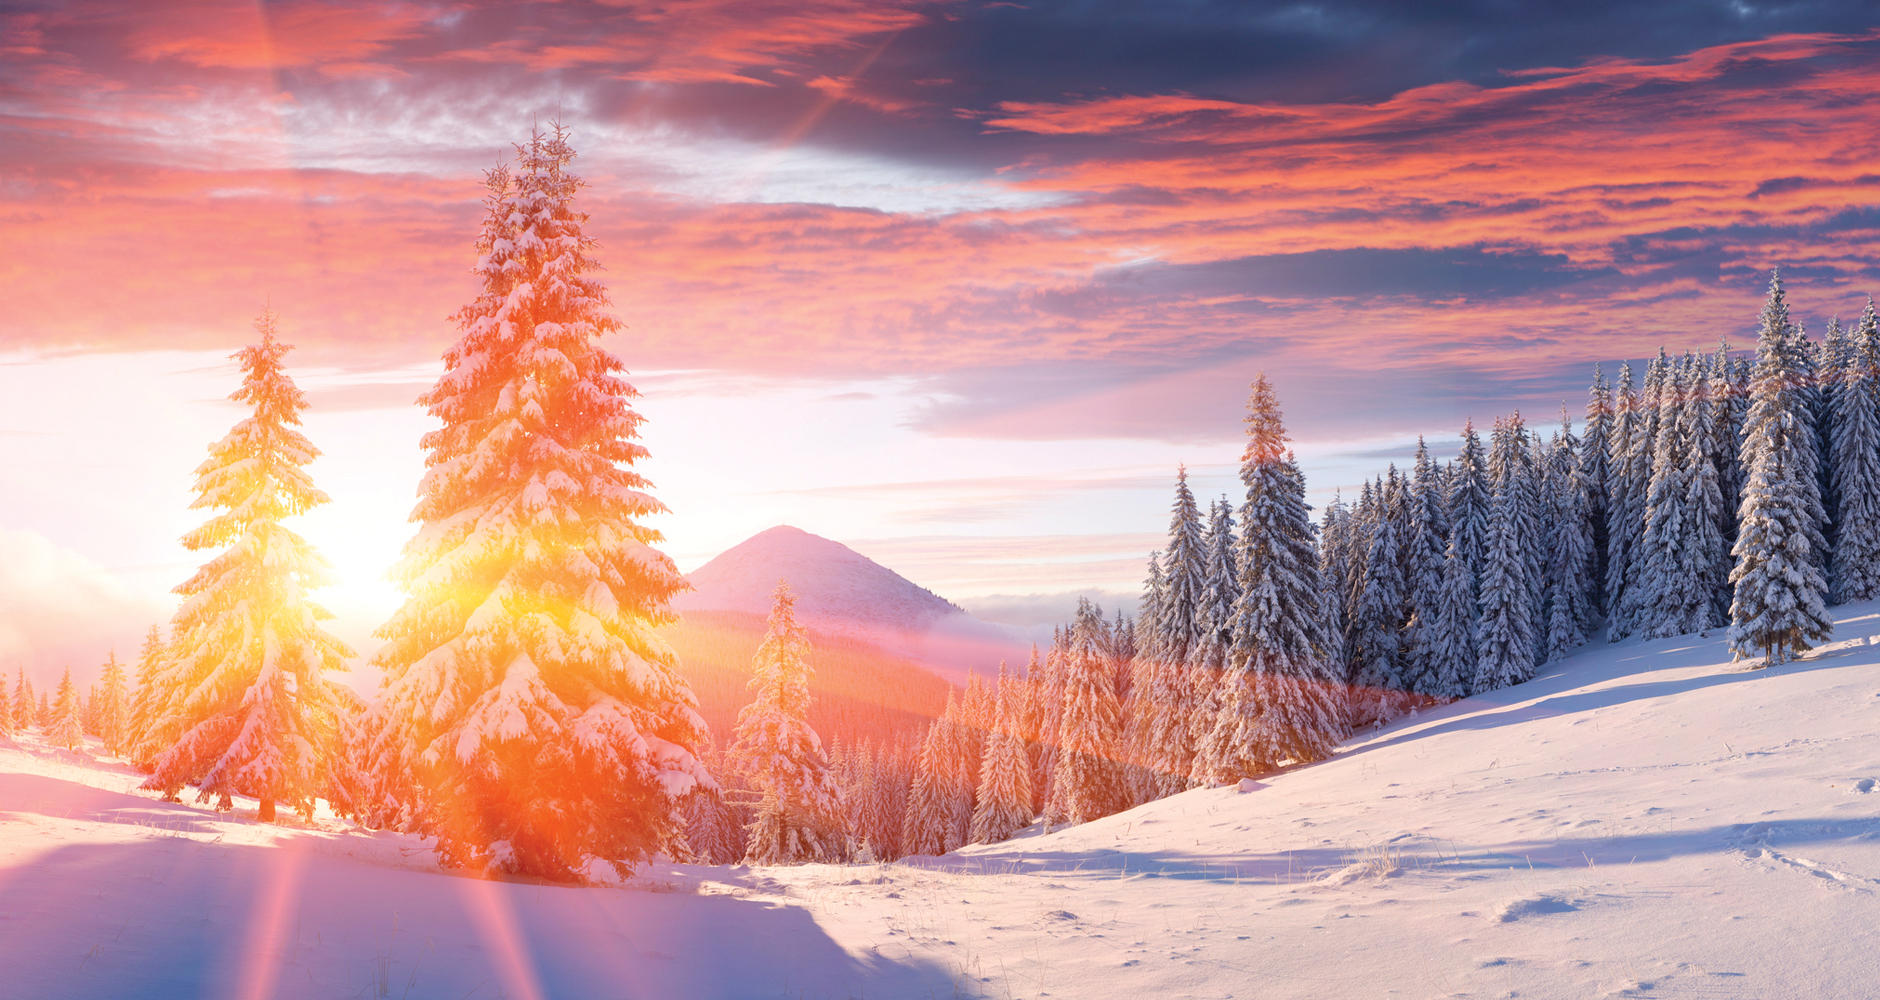  
Зимното слънцестоене е важен астрологичен феномен когато Слънцето се отдалечава